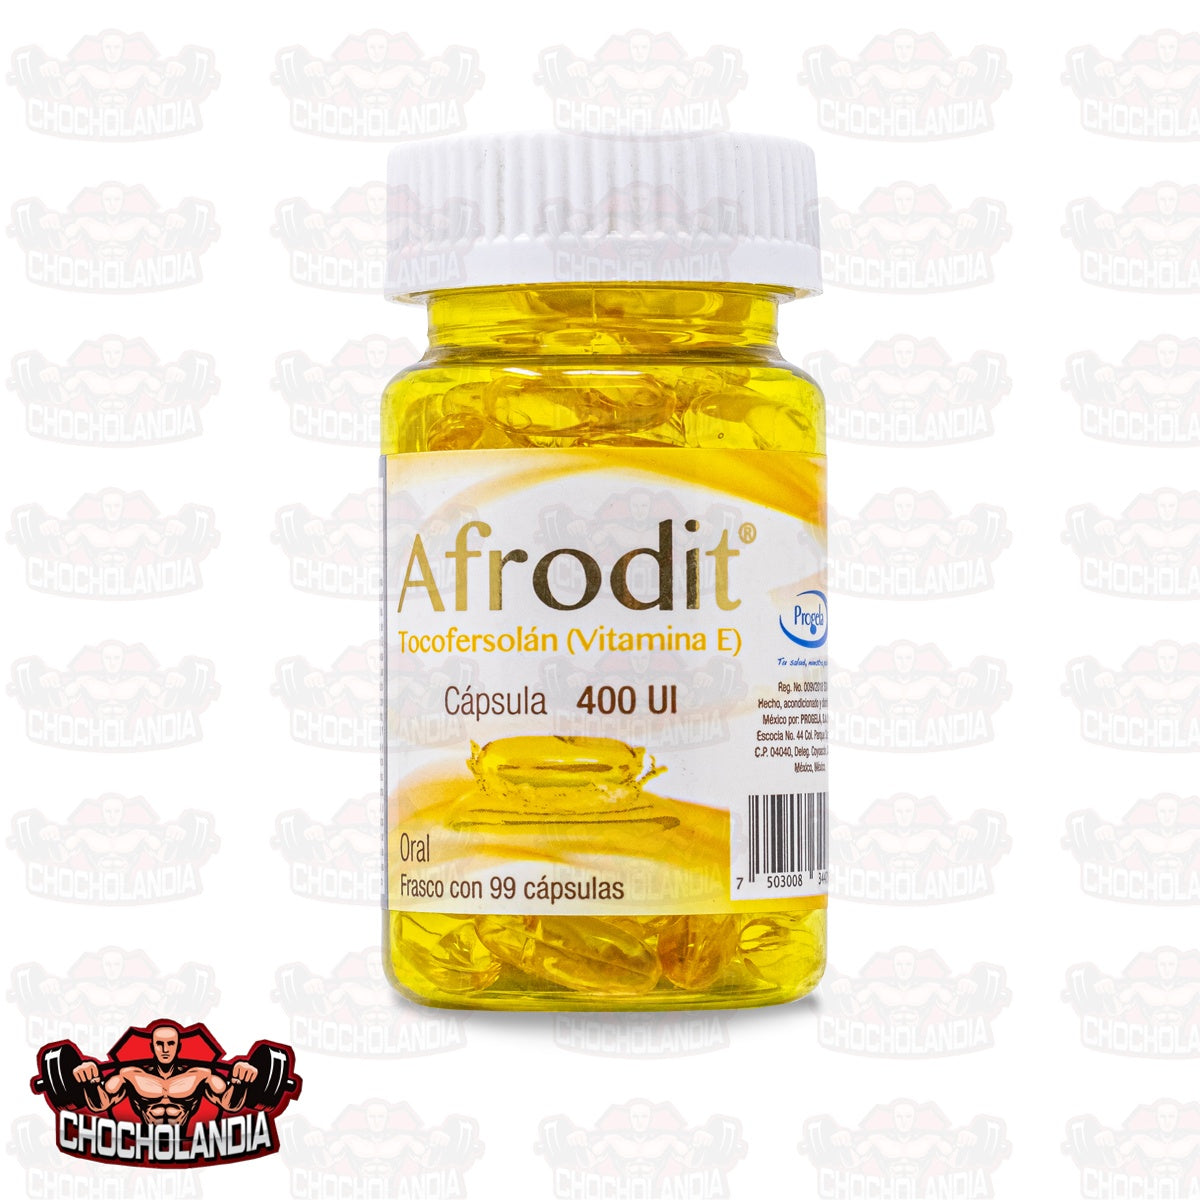 Afrodit Tocofersolan Vitamina E 99 Capsulas 400 Ui